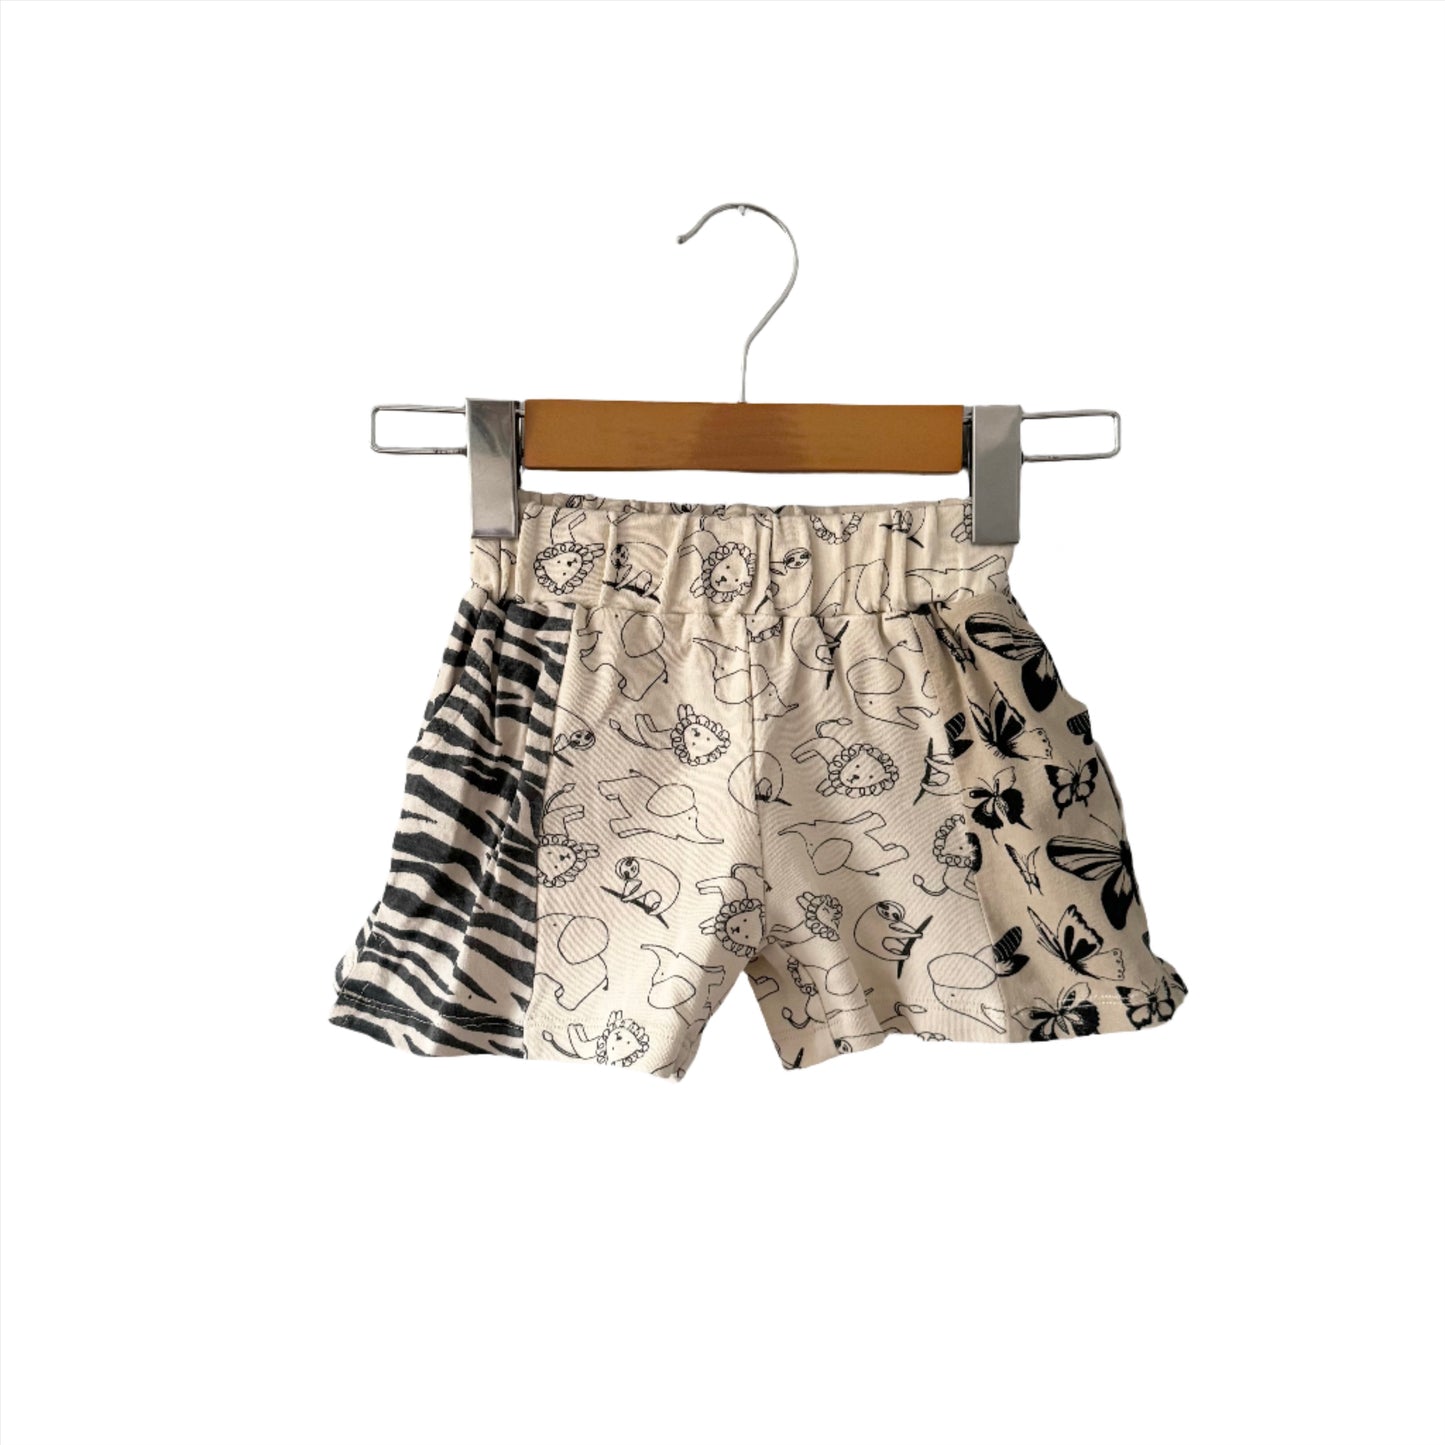 Nudnik / Animal, butterfly, zebra sweat shorts / 4Y